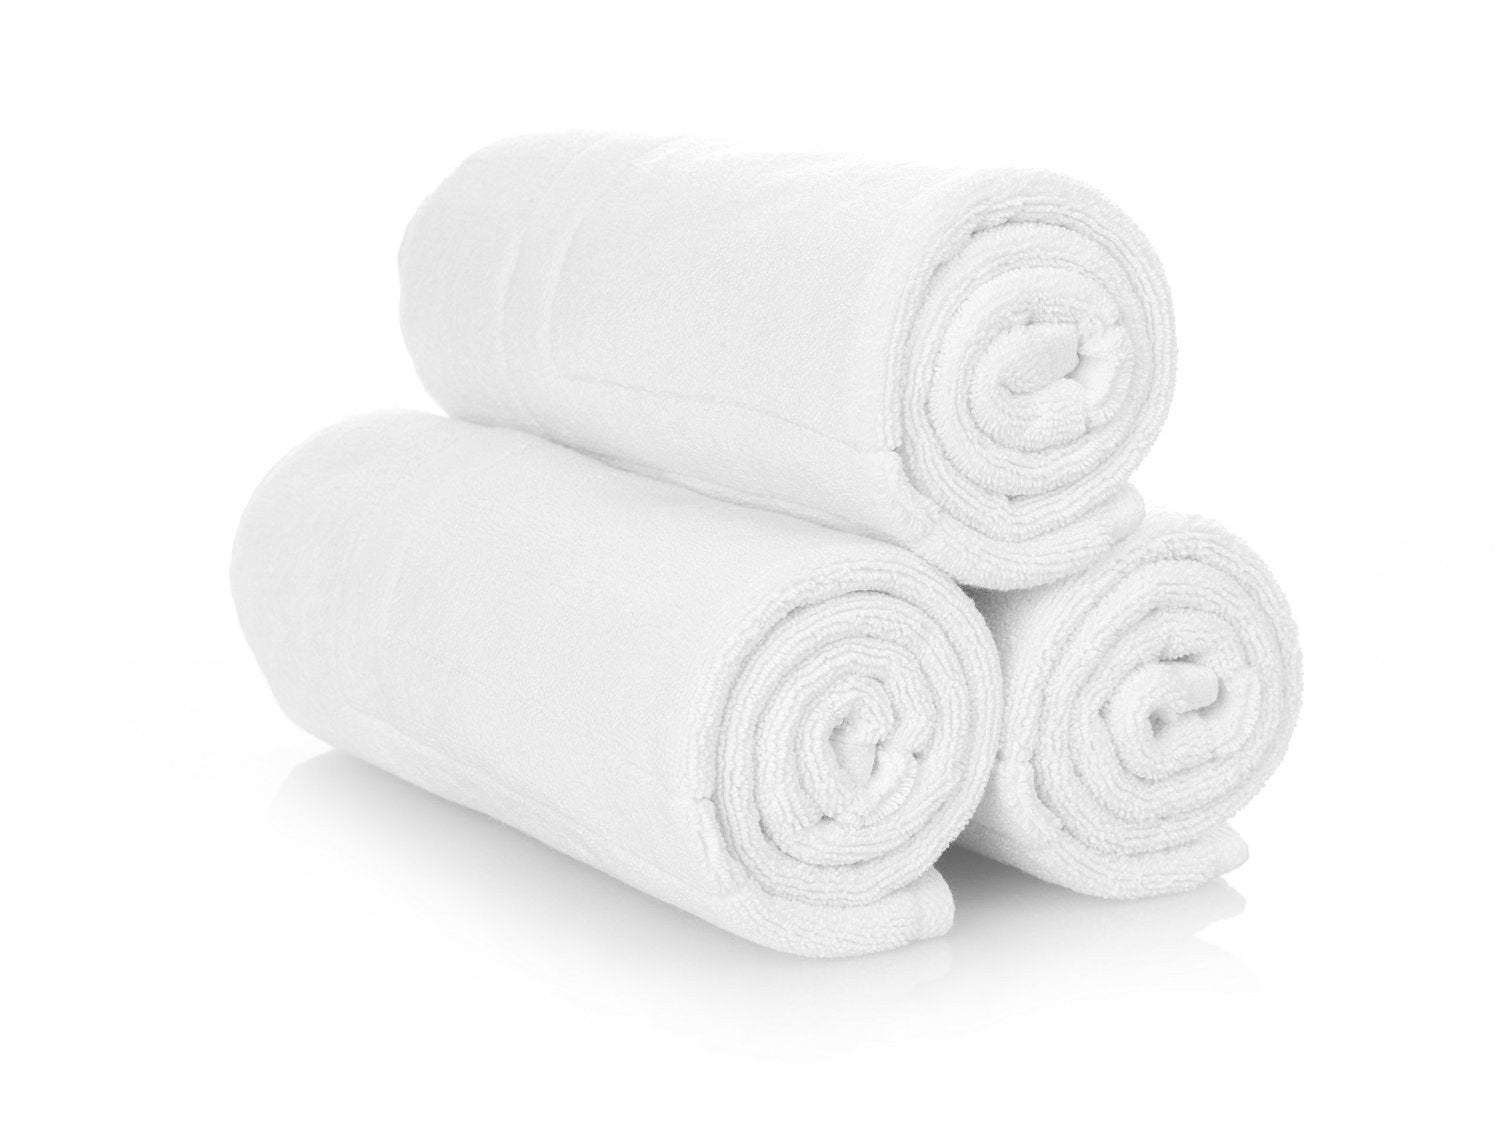 Chesto безворсовые полотенца. Полотенце. Скрученное полотенце. Полотенца сложенные в рулон. Сложенные белые полотенца.